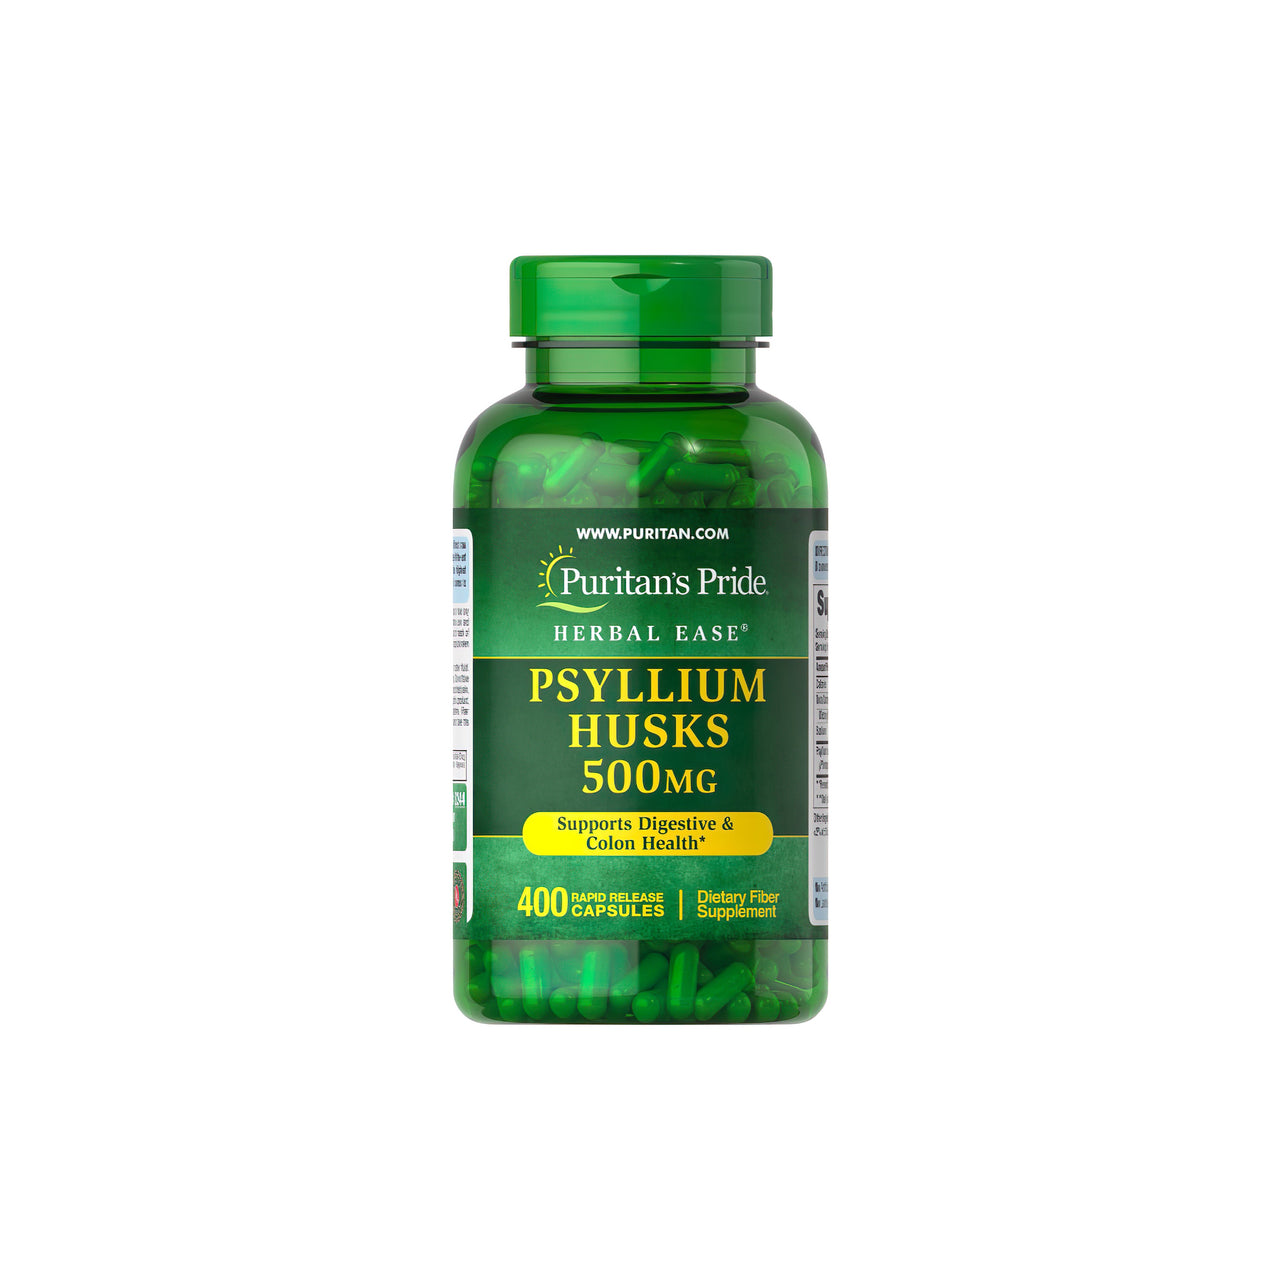 Um frasco de Puritan's Pride Psyllium Husks 500 mg 400 Rapid Release Capsules, conhecido pelo seu teor de fibra solúvel que apoia a saúde digestiva e do cólon.